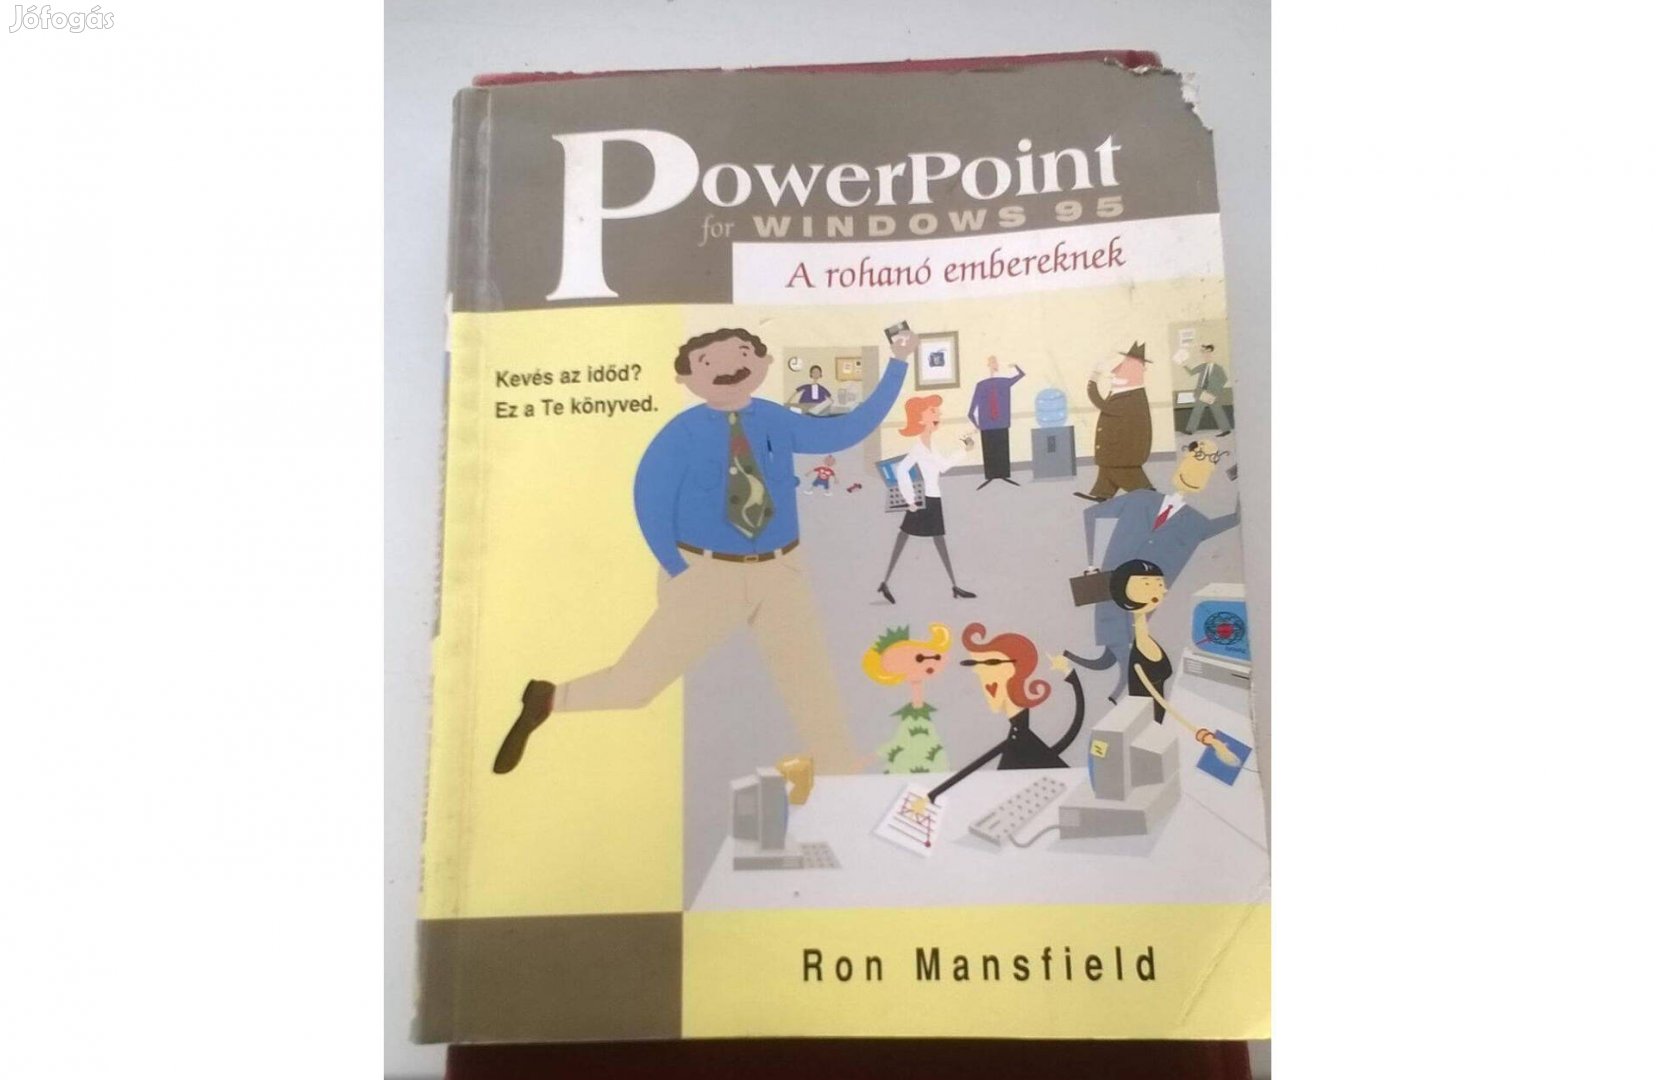 Power Point for Windows ' 95 című könyv ,használt ,jó állapotú